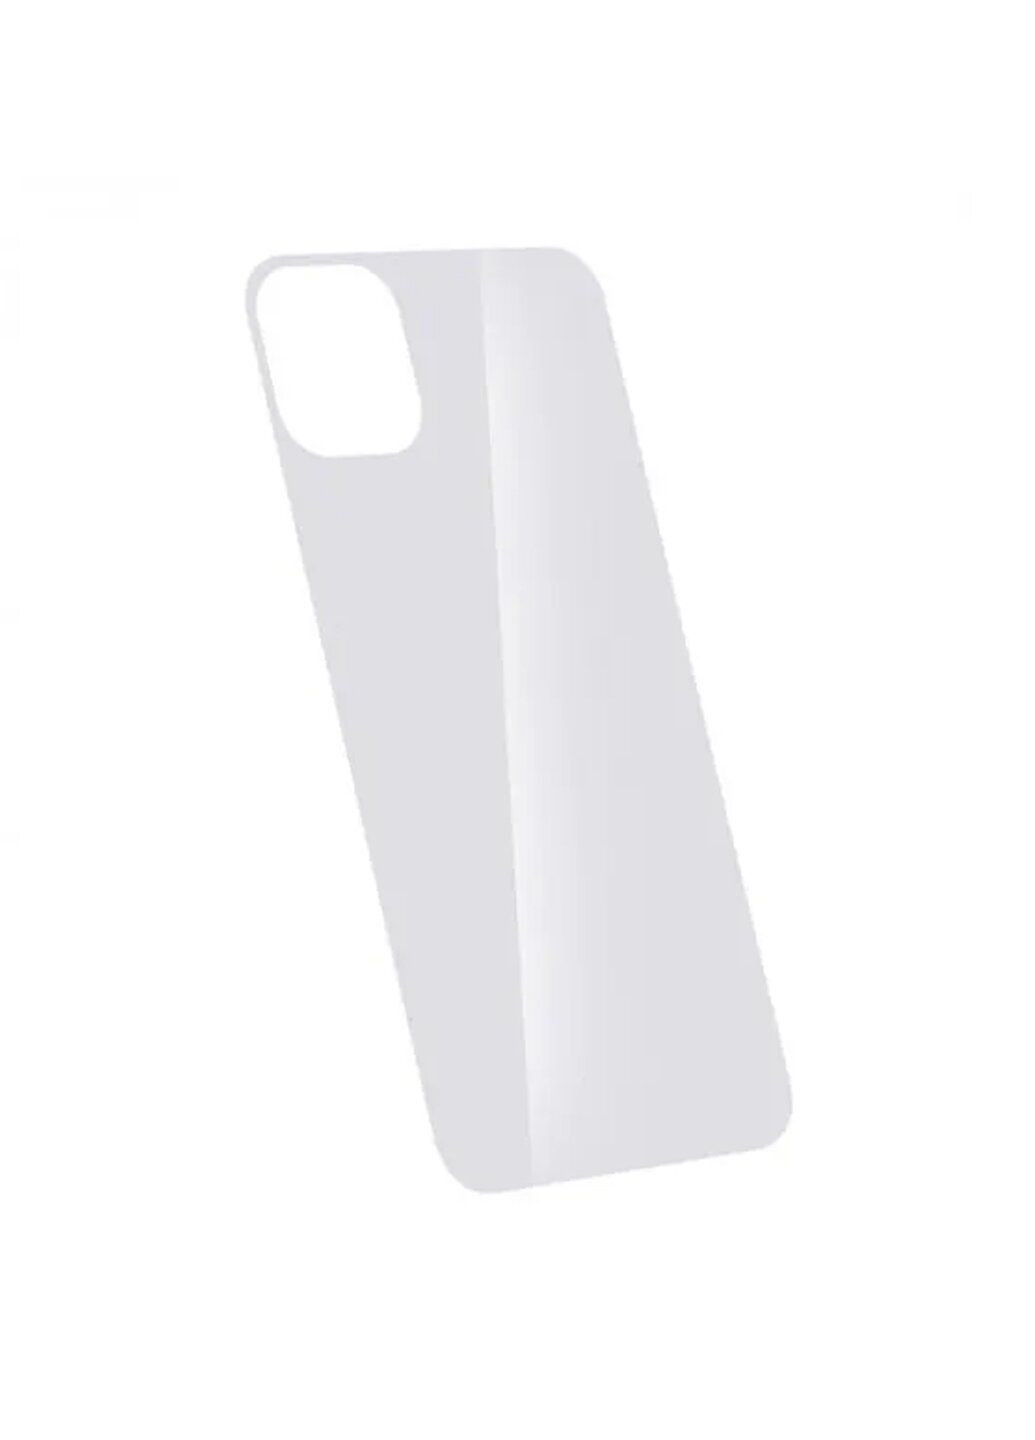 Защитное стекло для iPhone 12/12 Pro глянцевое на заднюю панель белое White CAA (220512162)